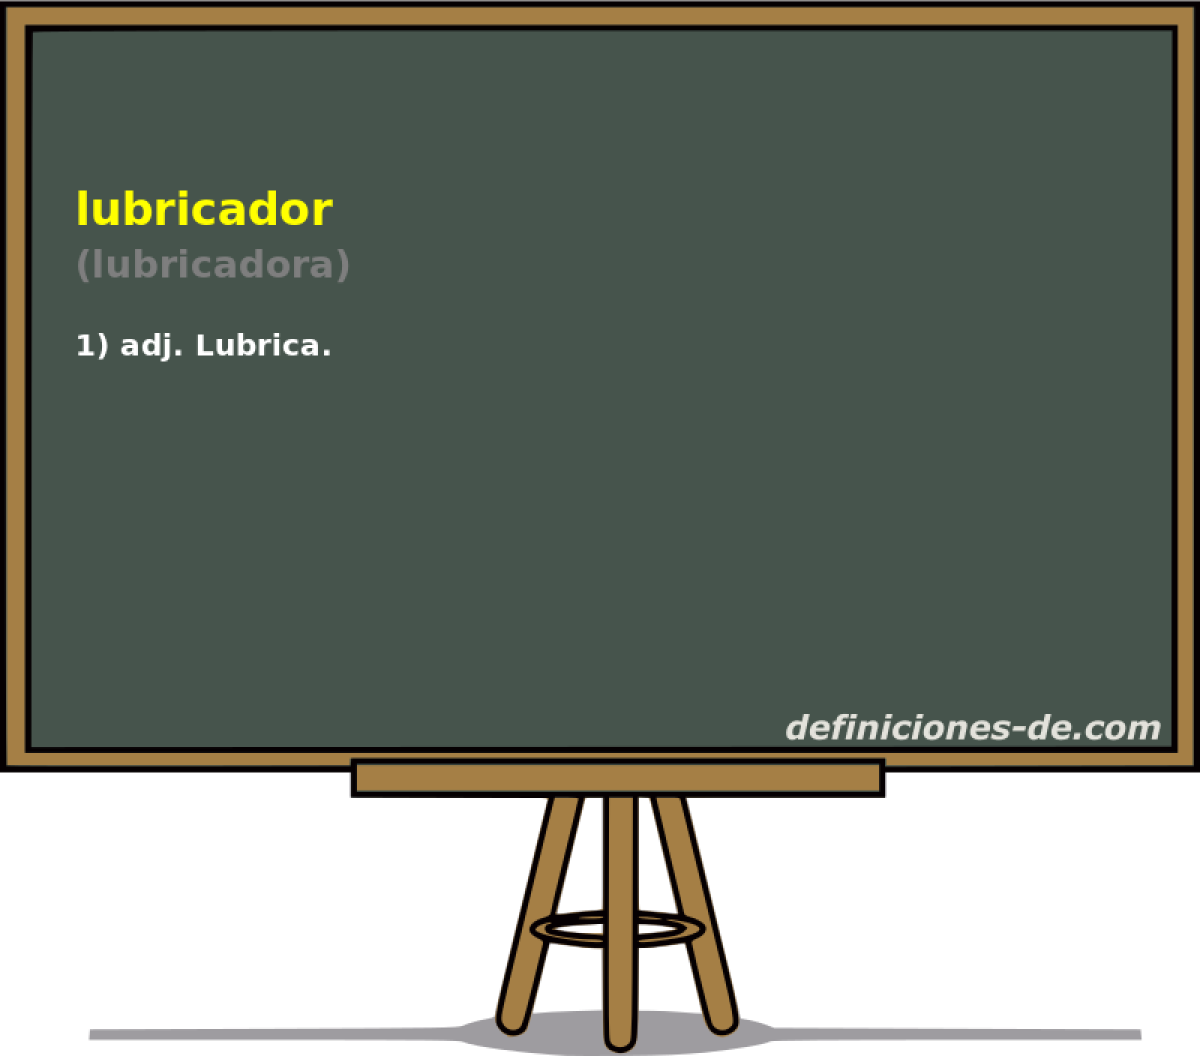 lubricador (lubricadora)